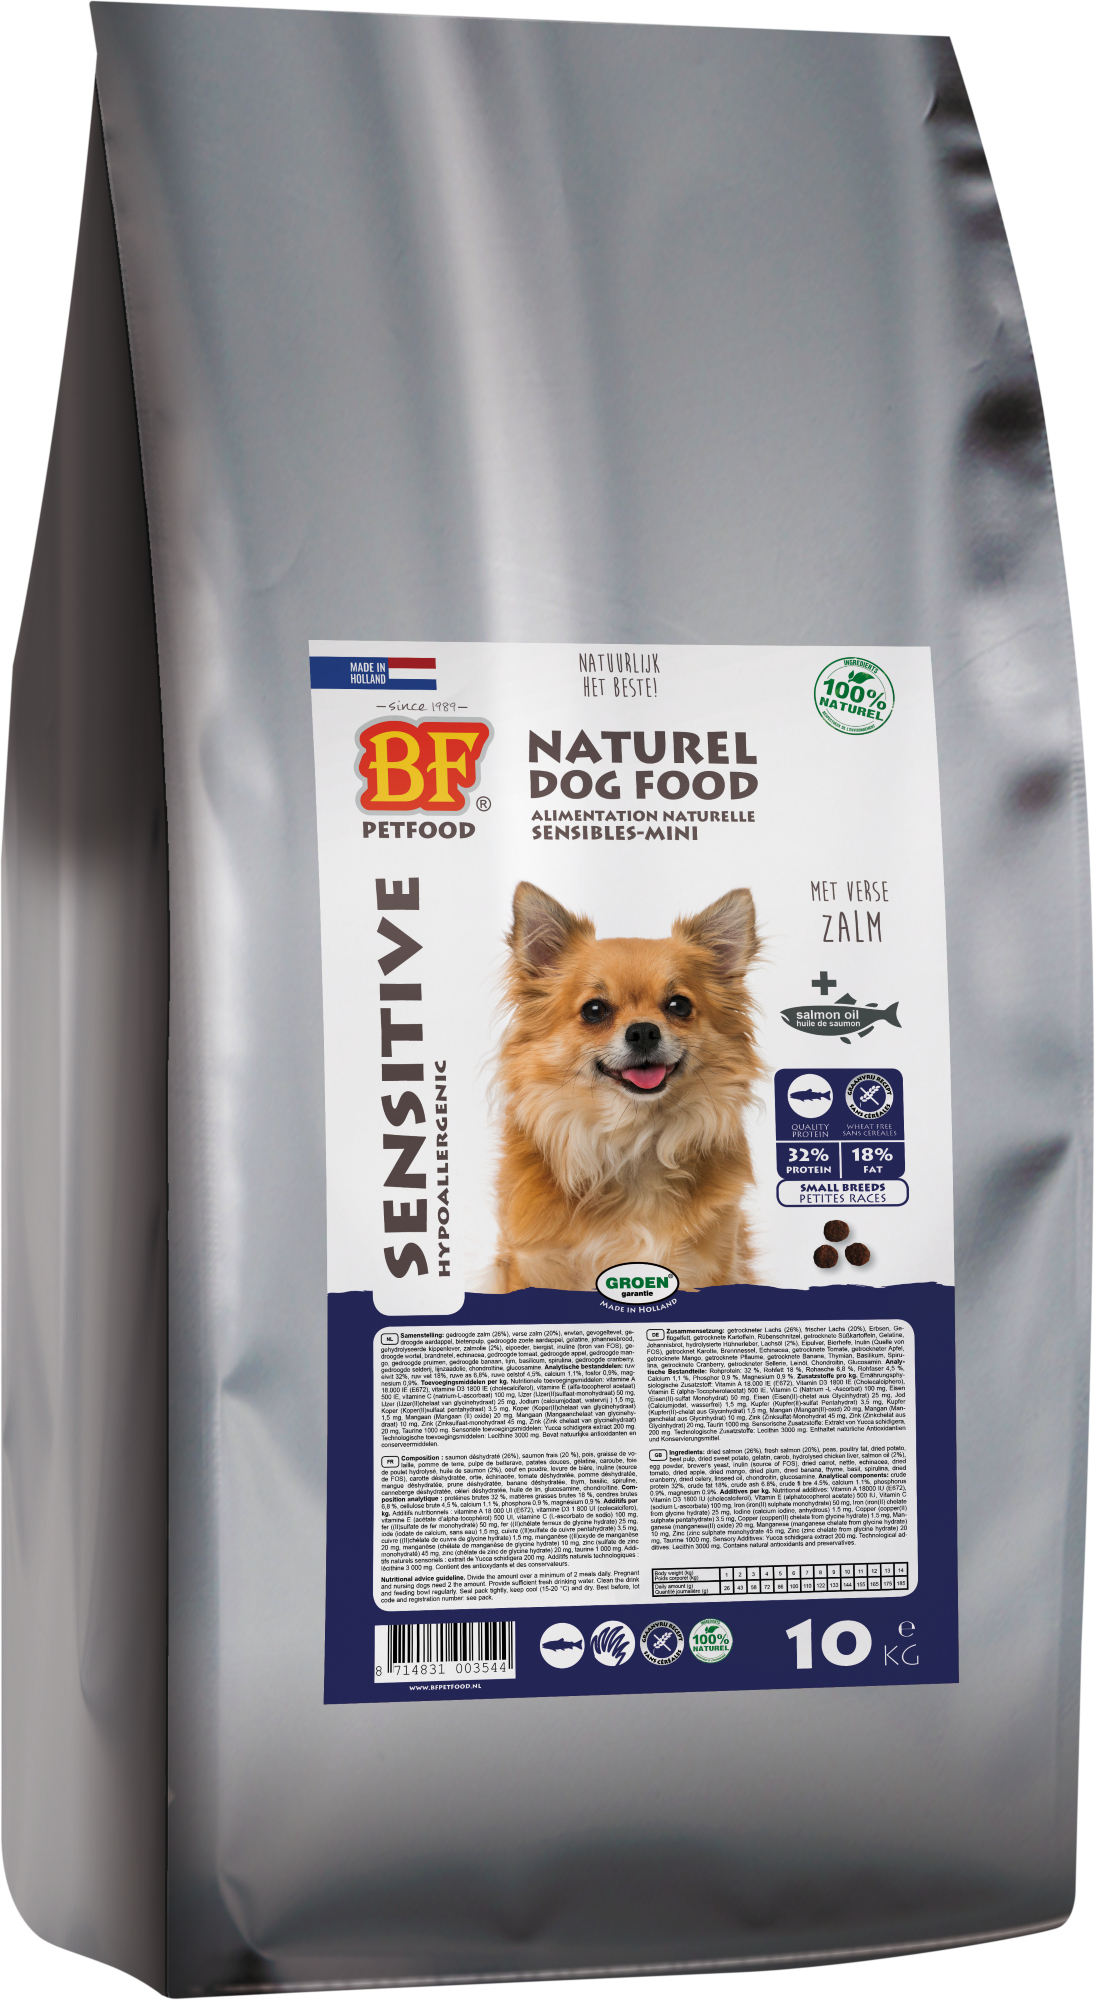 BIOFOOD MINI Sensitive 32/18 Getreidefrei für empfindliche erwachsene Hunde kleiner Rassen  